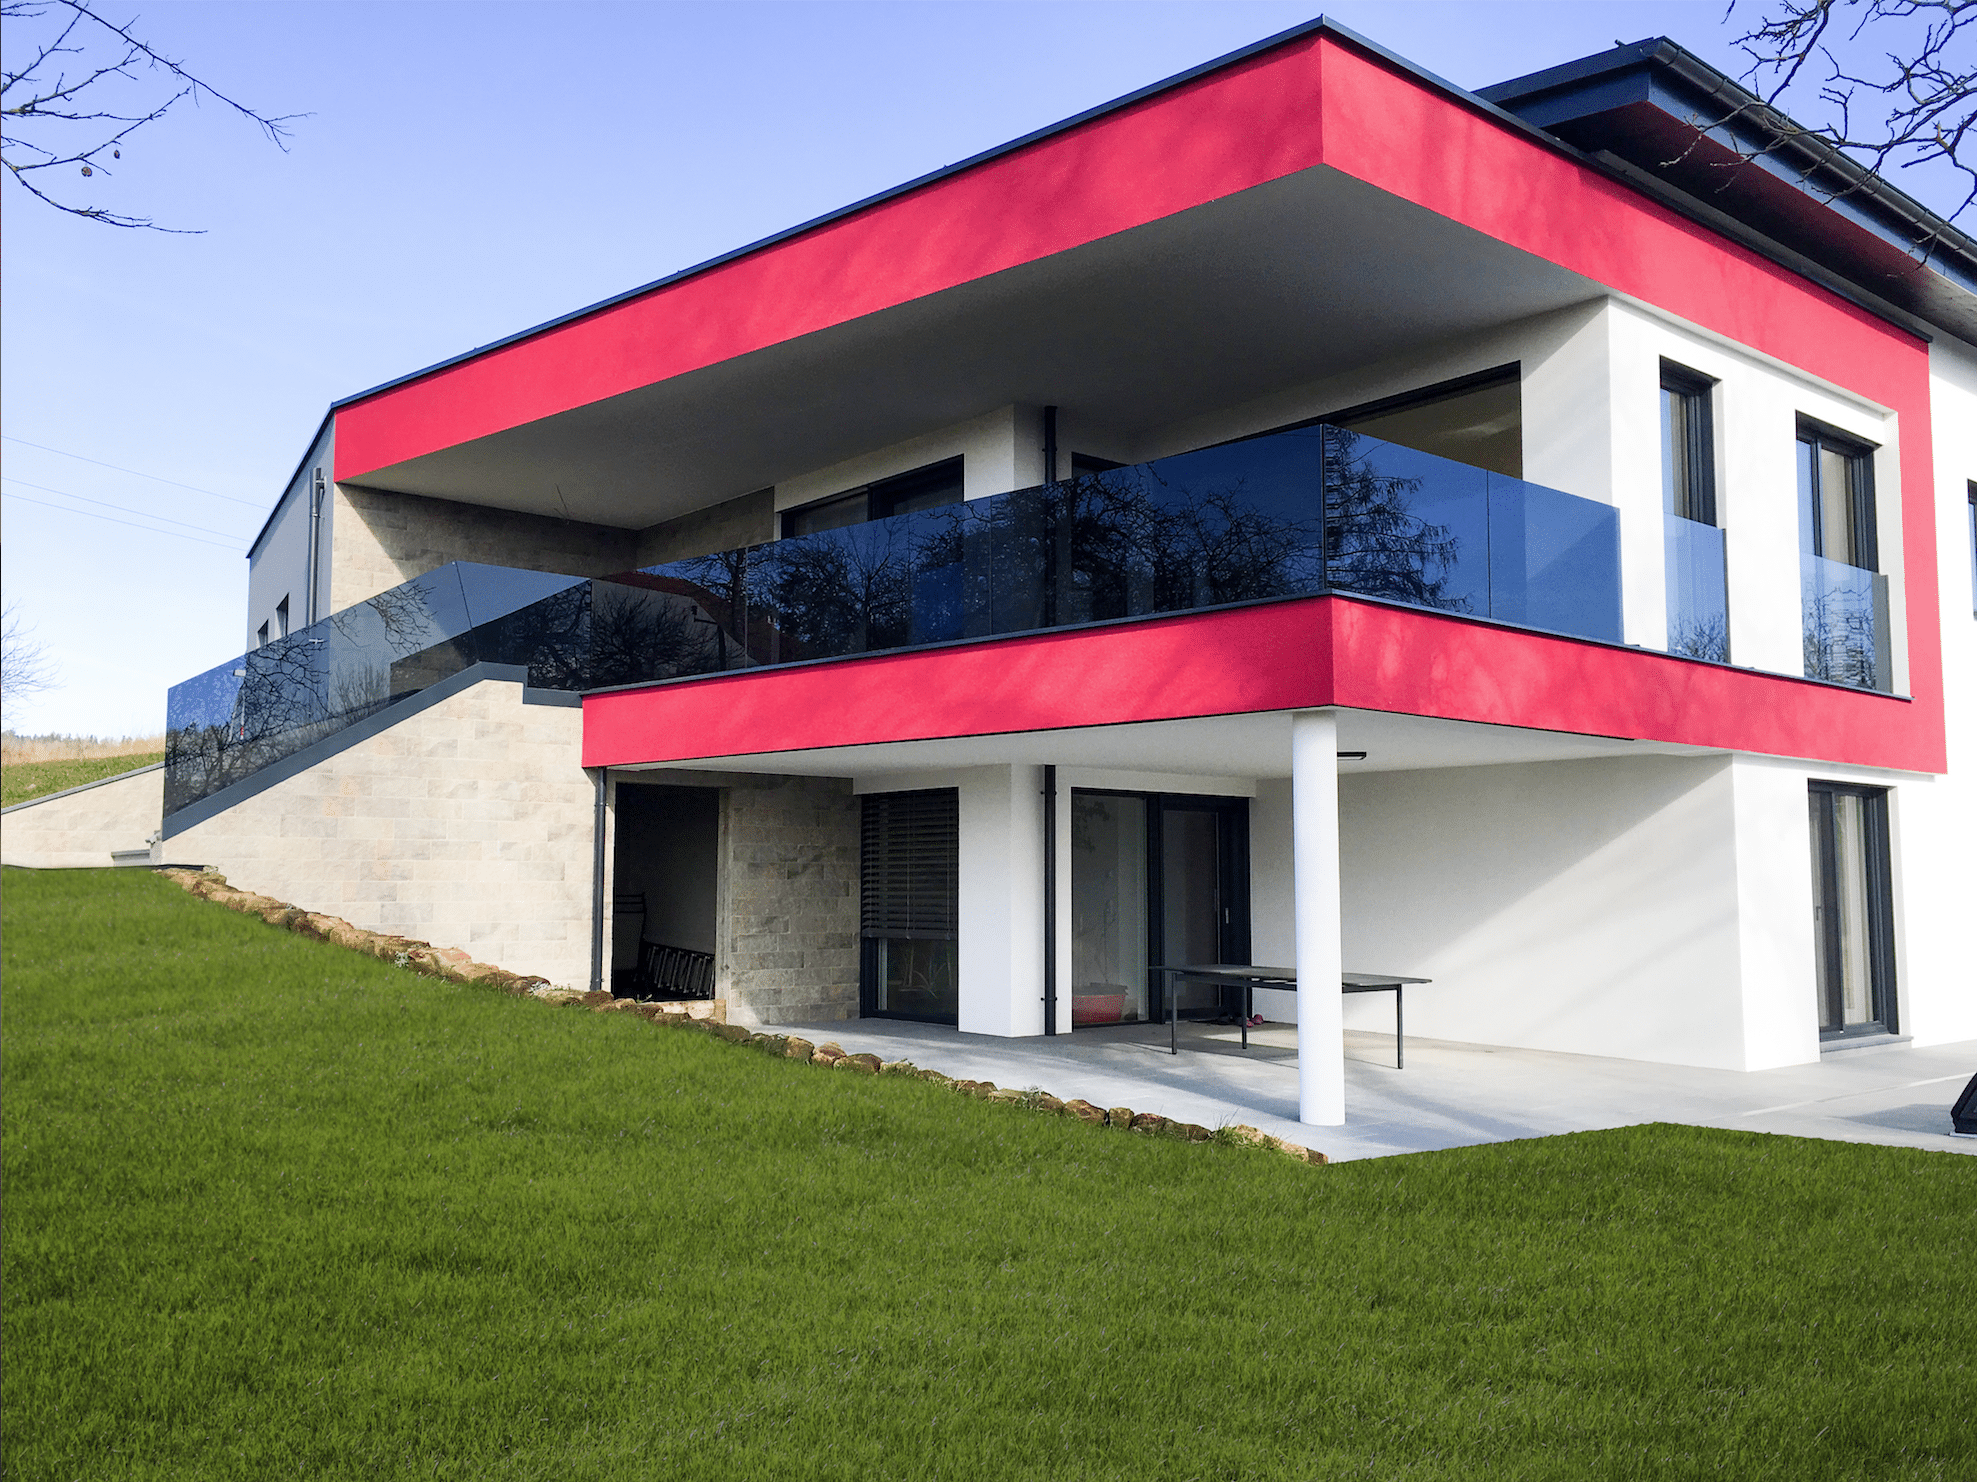 Haus mit teilweise roter Fassade, Terrasse und Balkon mit Glas von Peindl Glasbau.